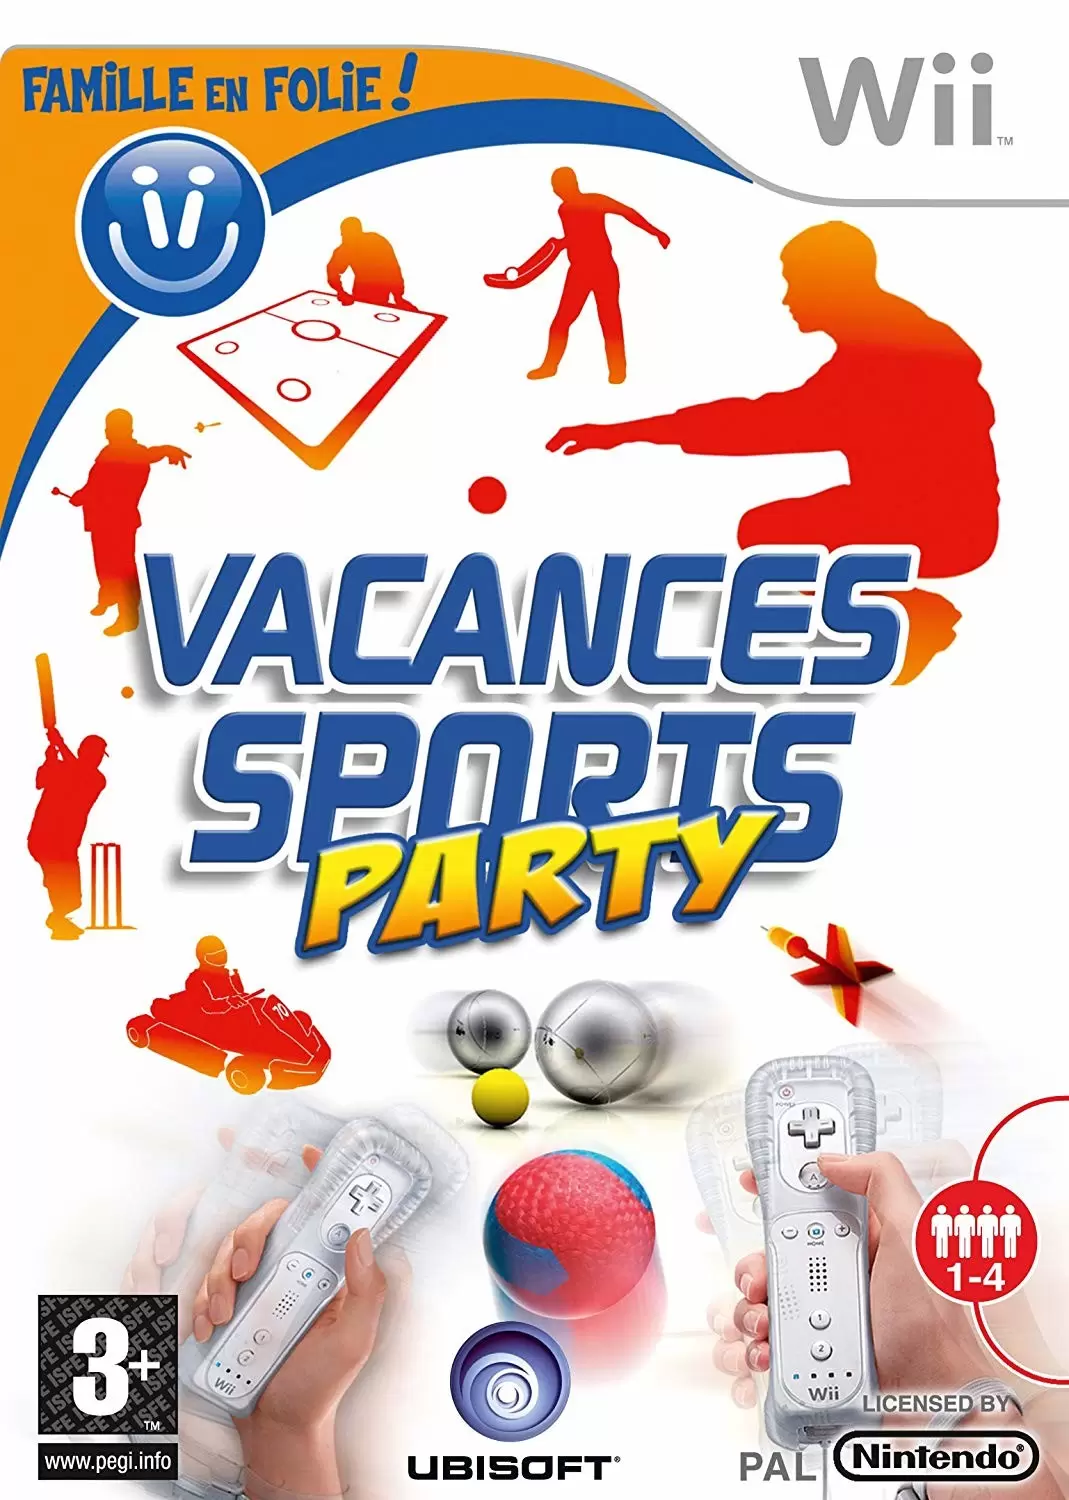 Jeux Nintendo Wii - Vacances, Sports Party (Famille en folie!)